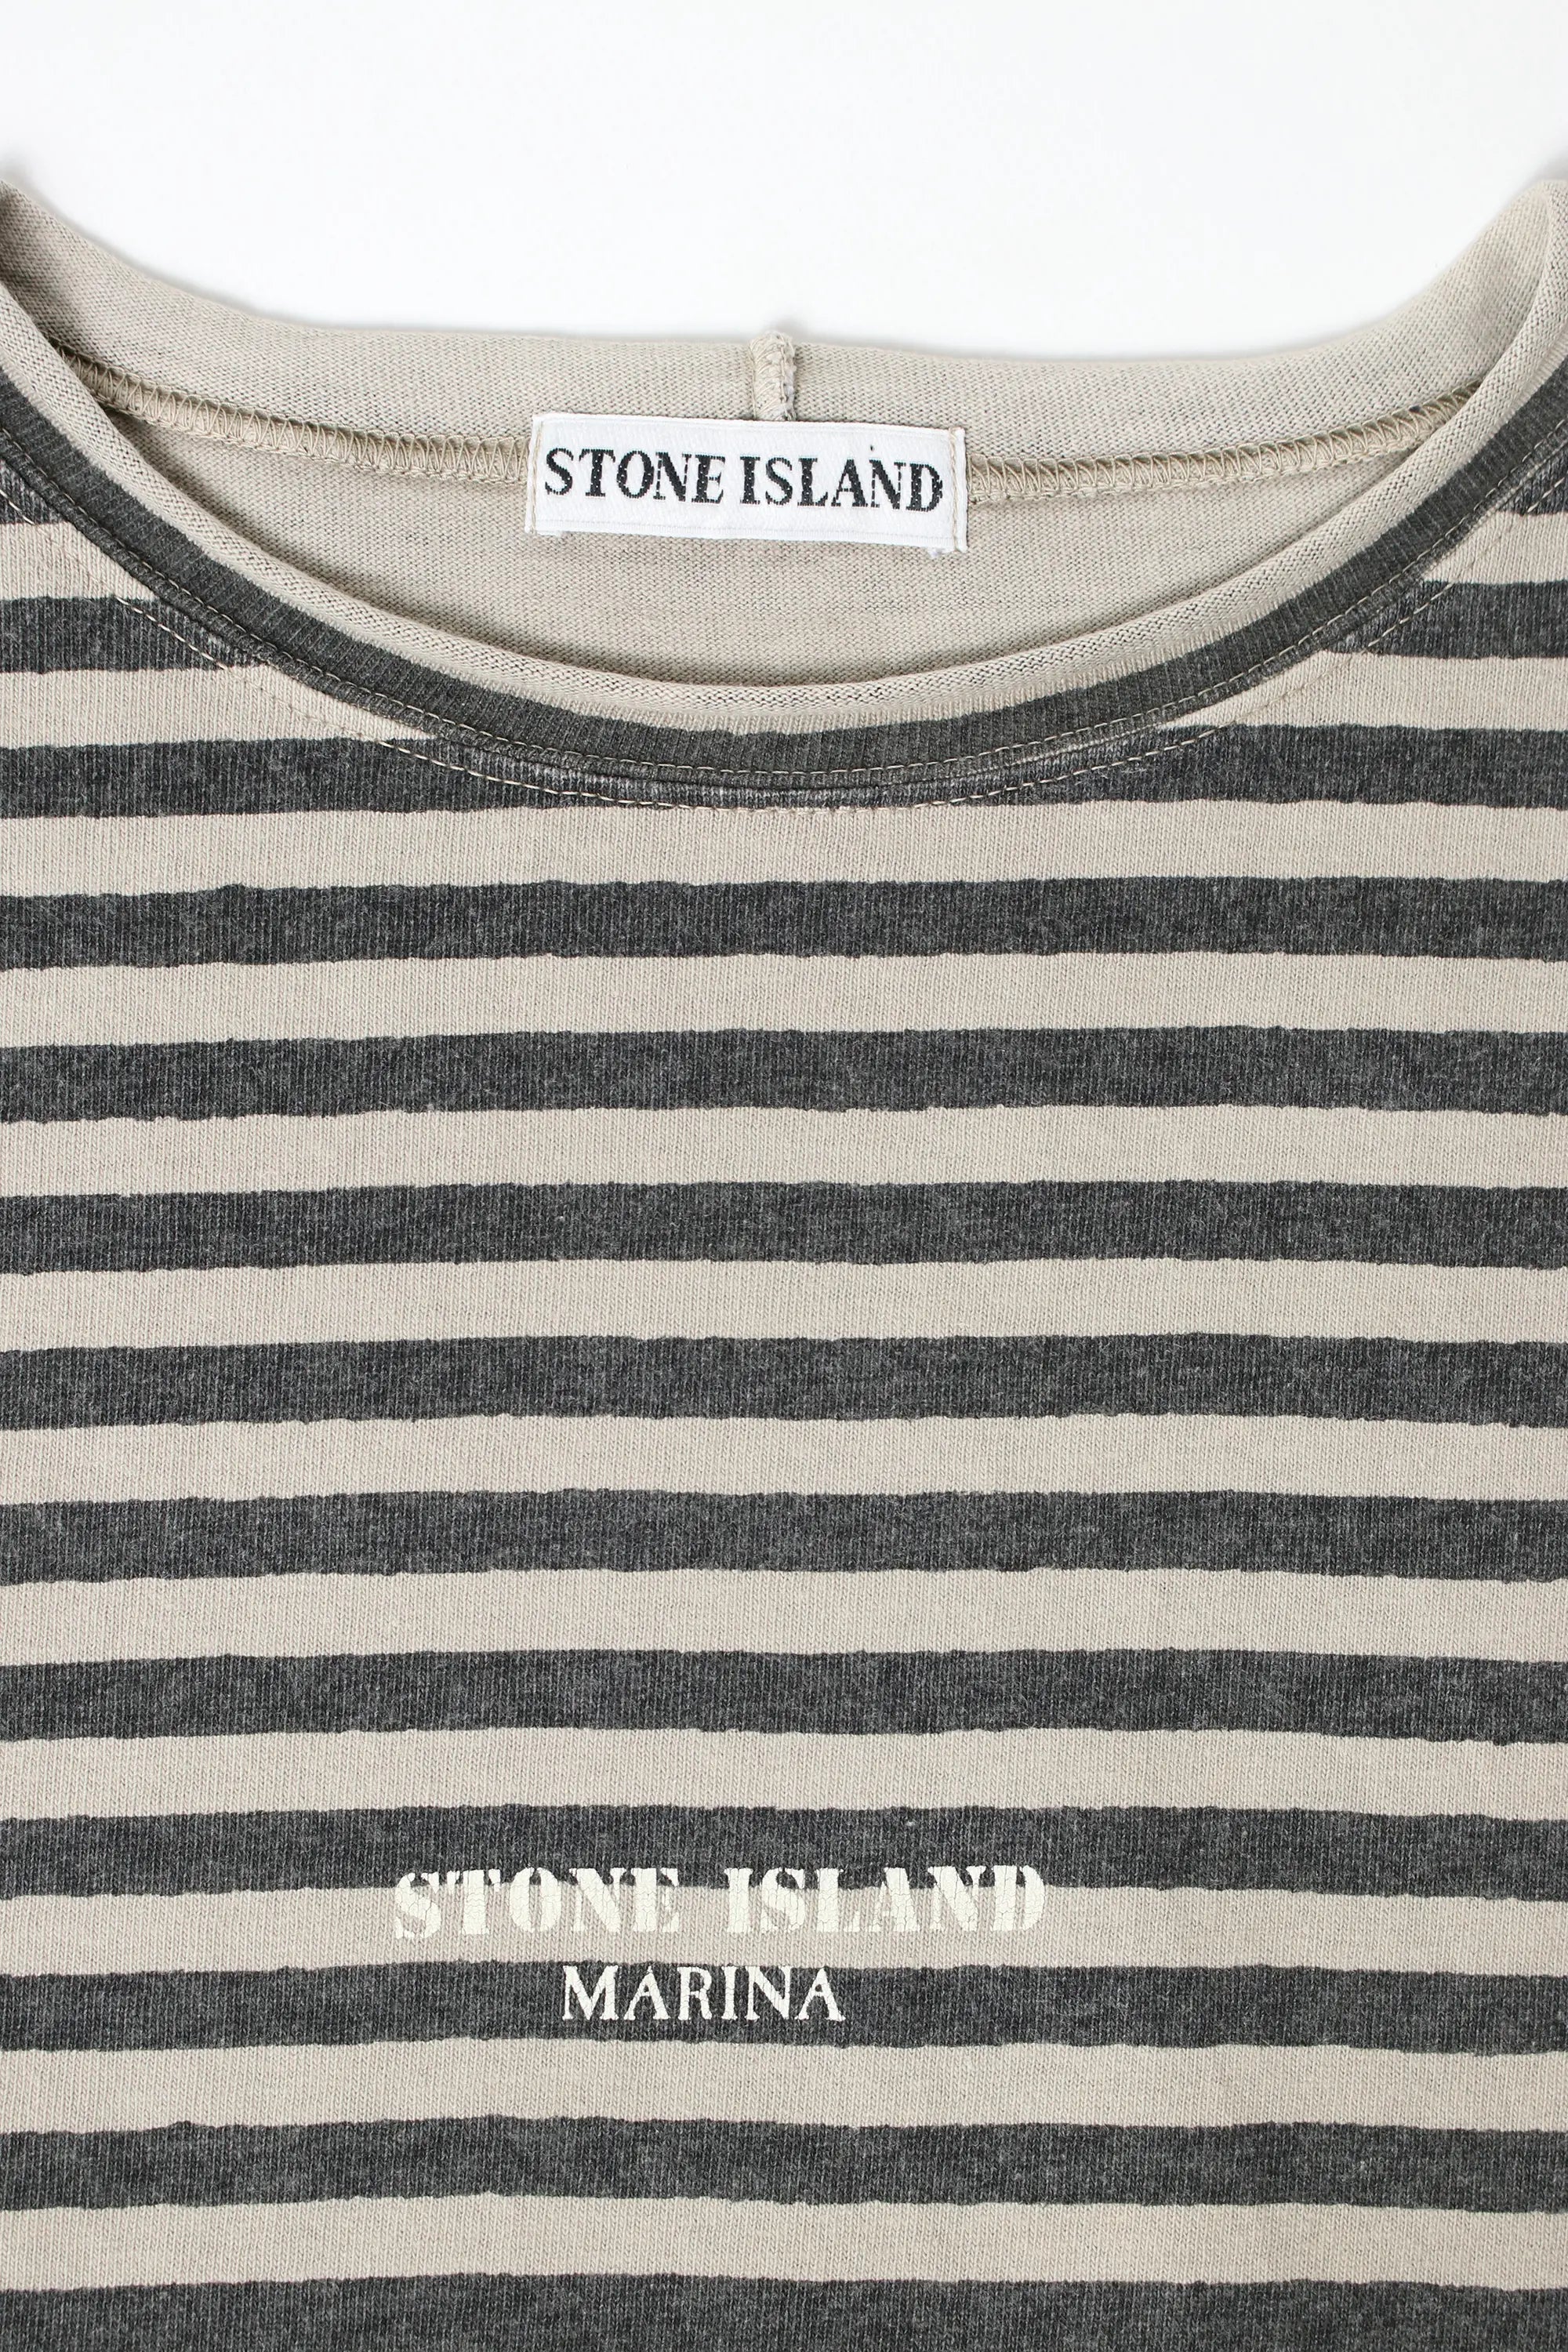 Stone Island Marina T.